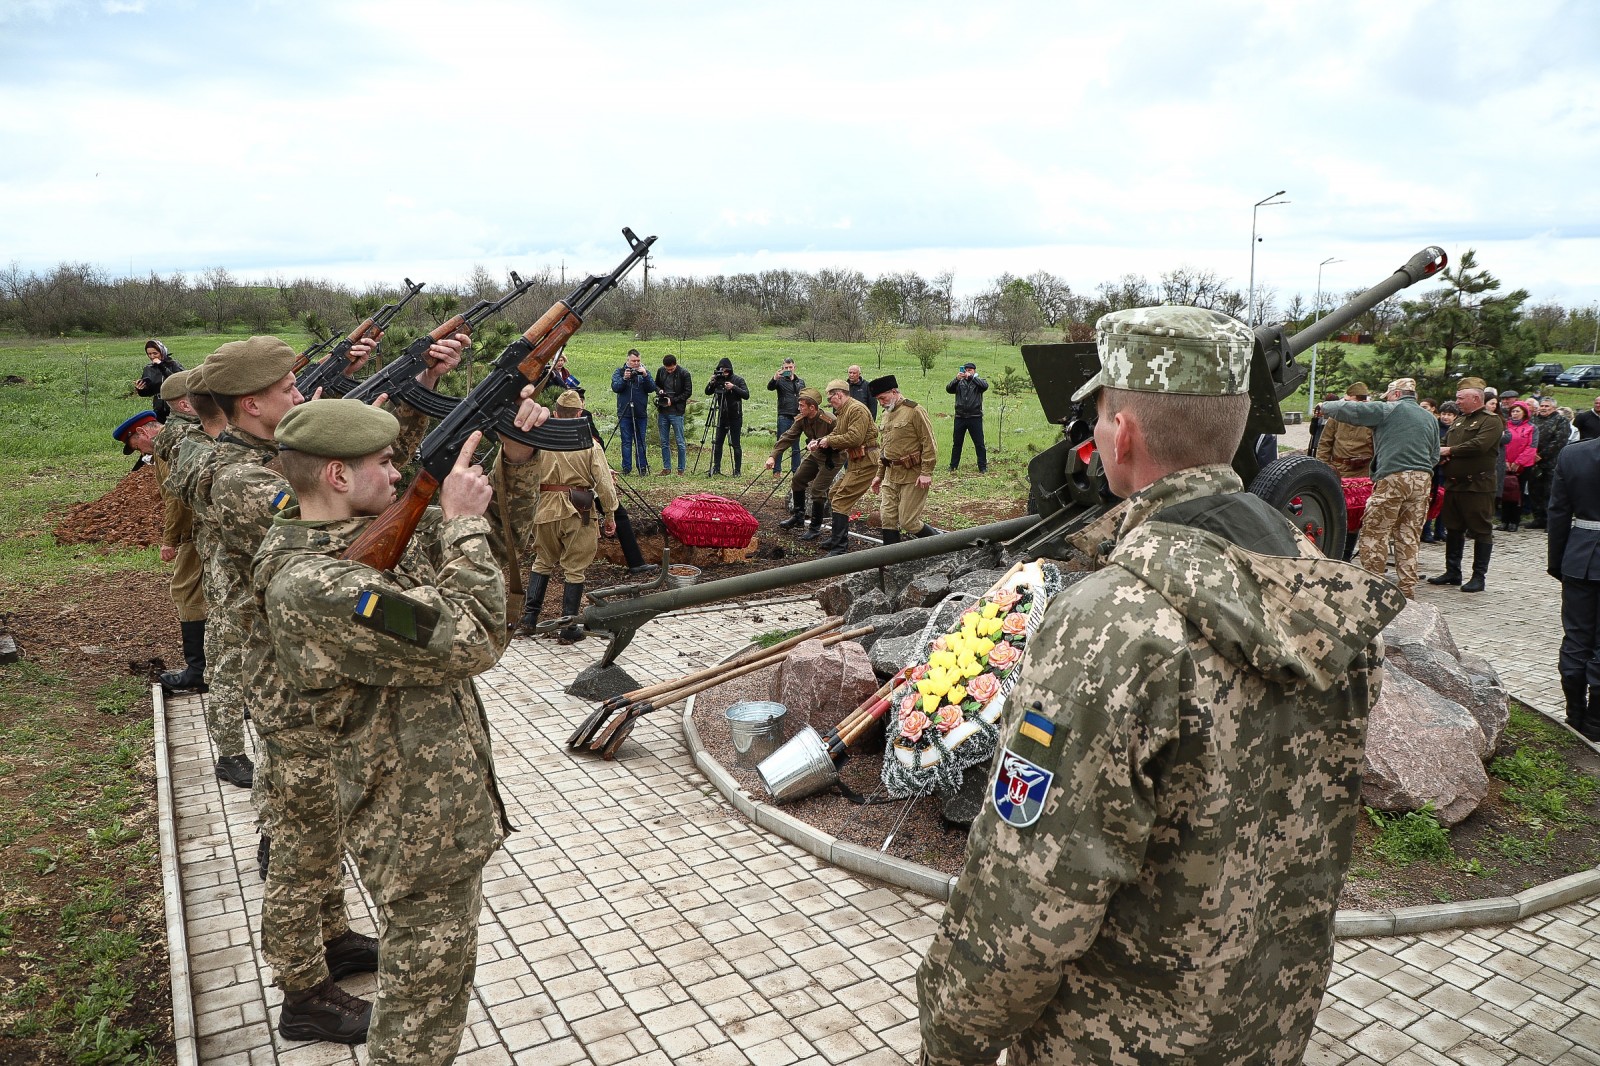 76 примирение. Армия z освободители Украины. M15 защитник. Фото за правду армия.